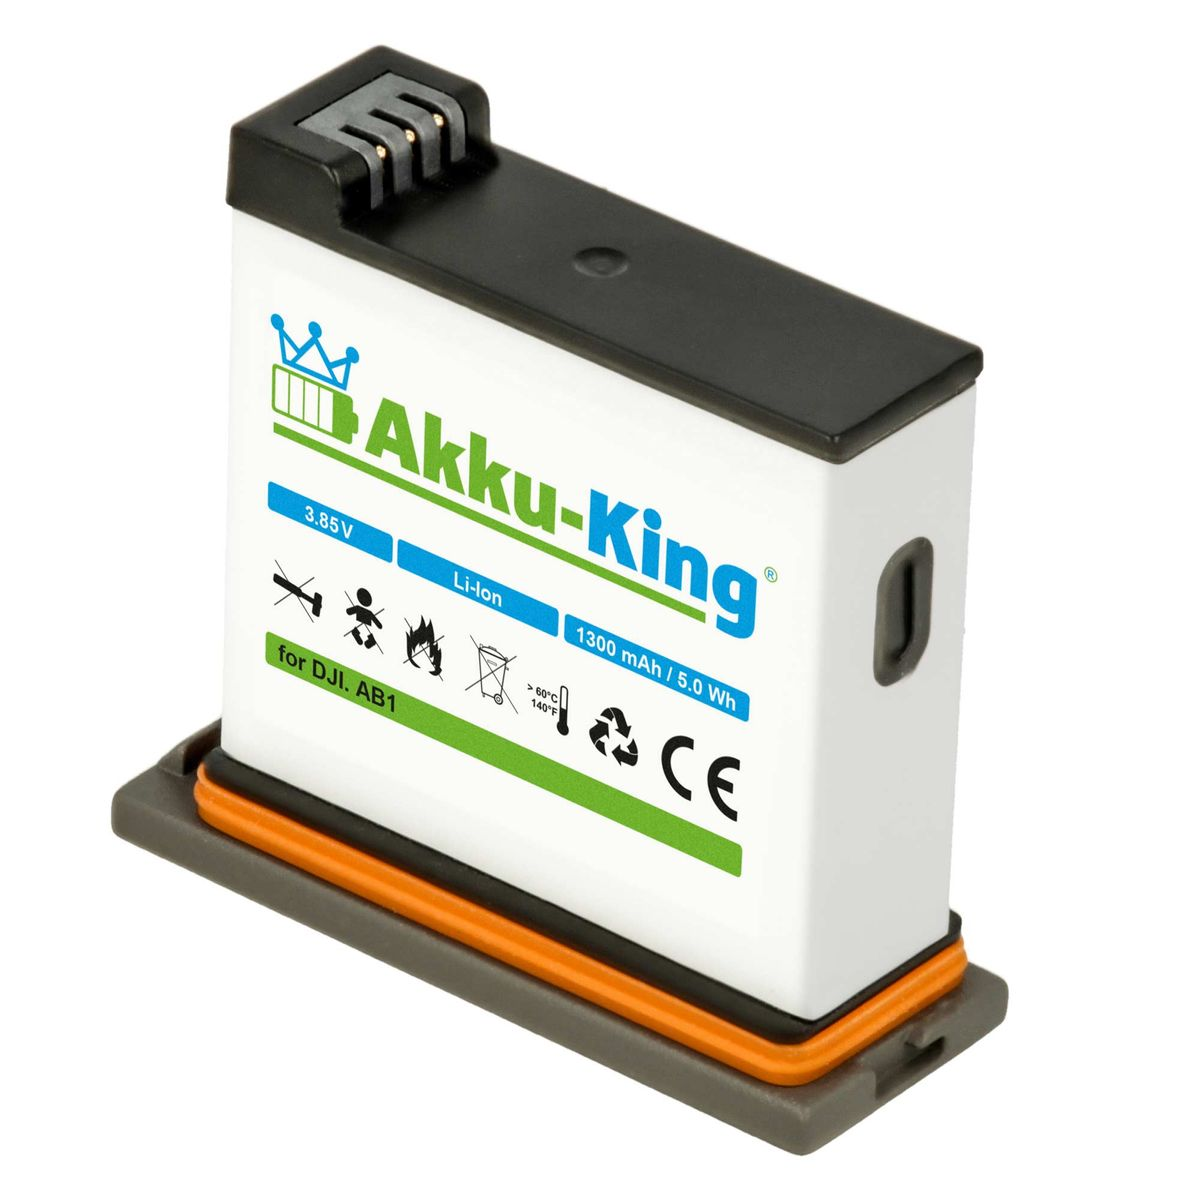 AKKU-KING Akku kompatibel mit DJI AB1 Volt, 1300mAh P01 Li-Ion Kamera-Akku, 3.85